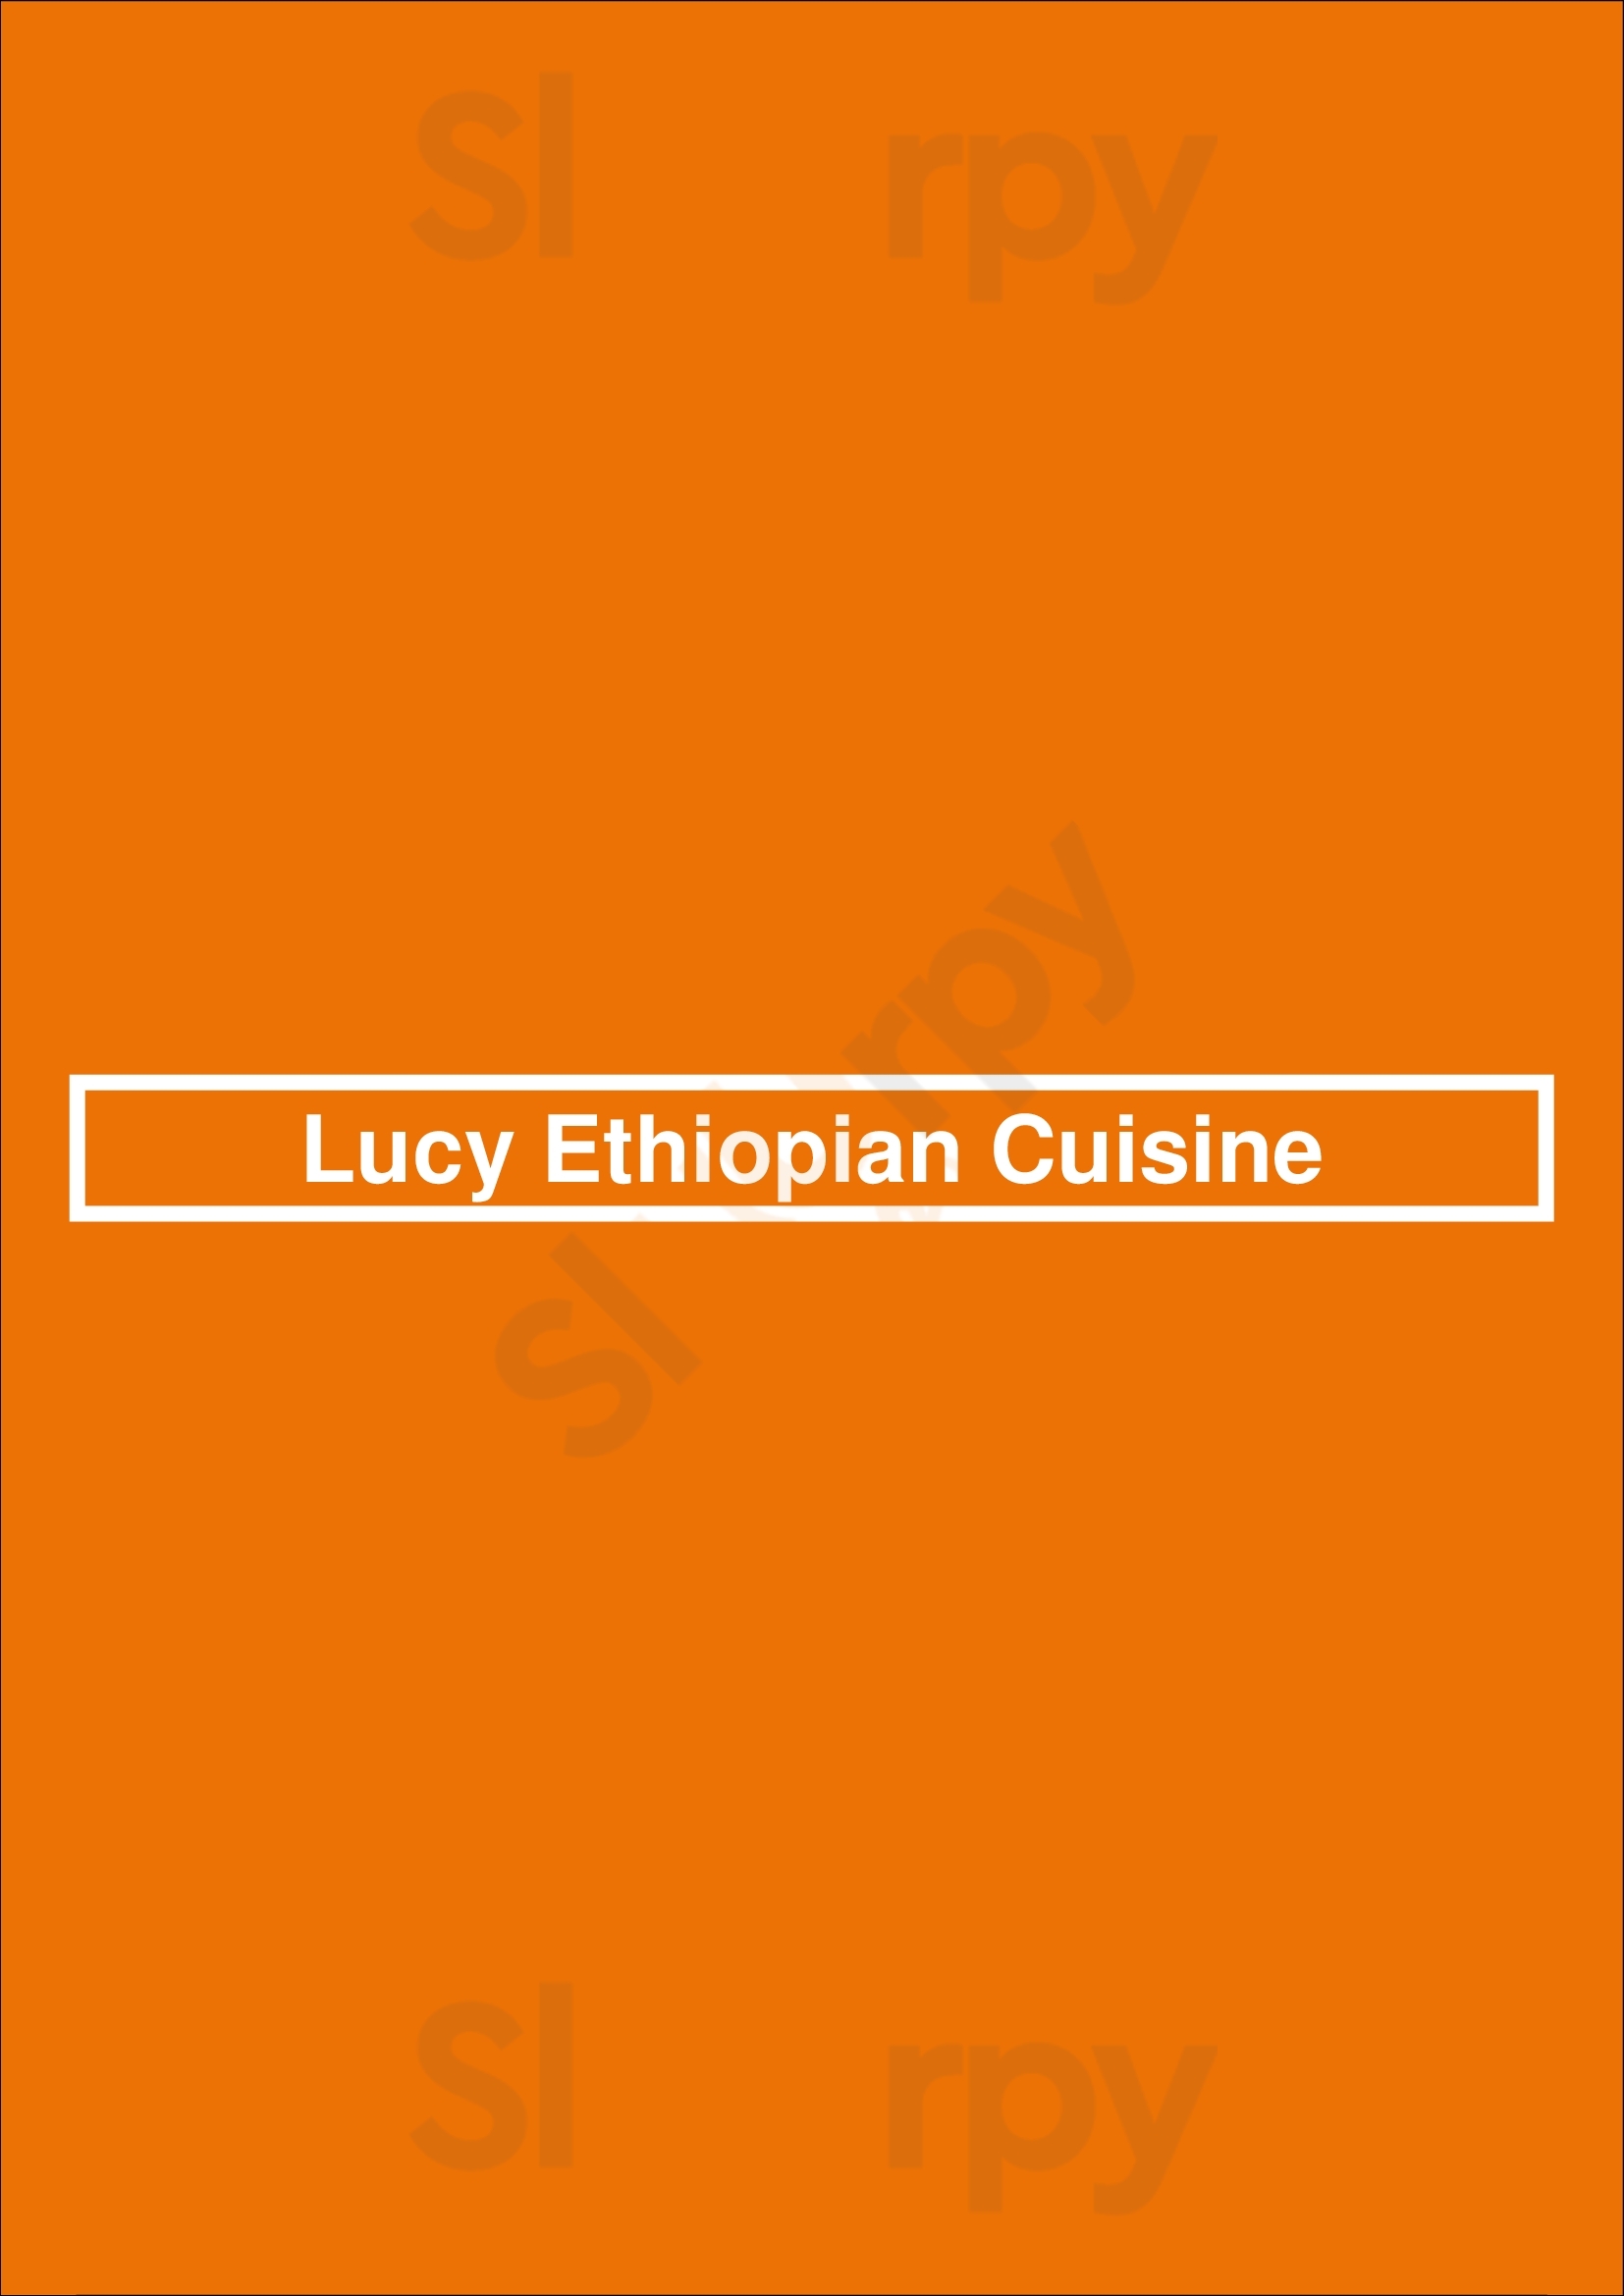 Lucy Ethiopian Cuisine Buffalo Menu - 1